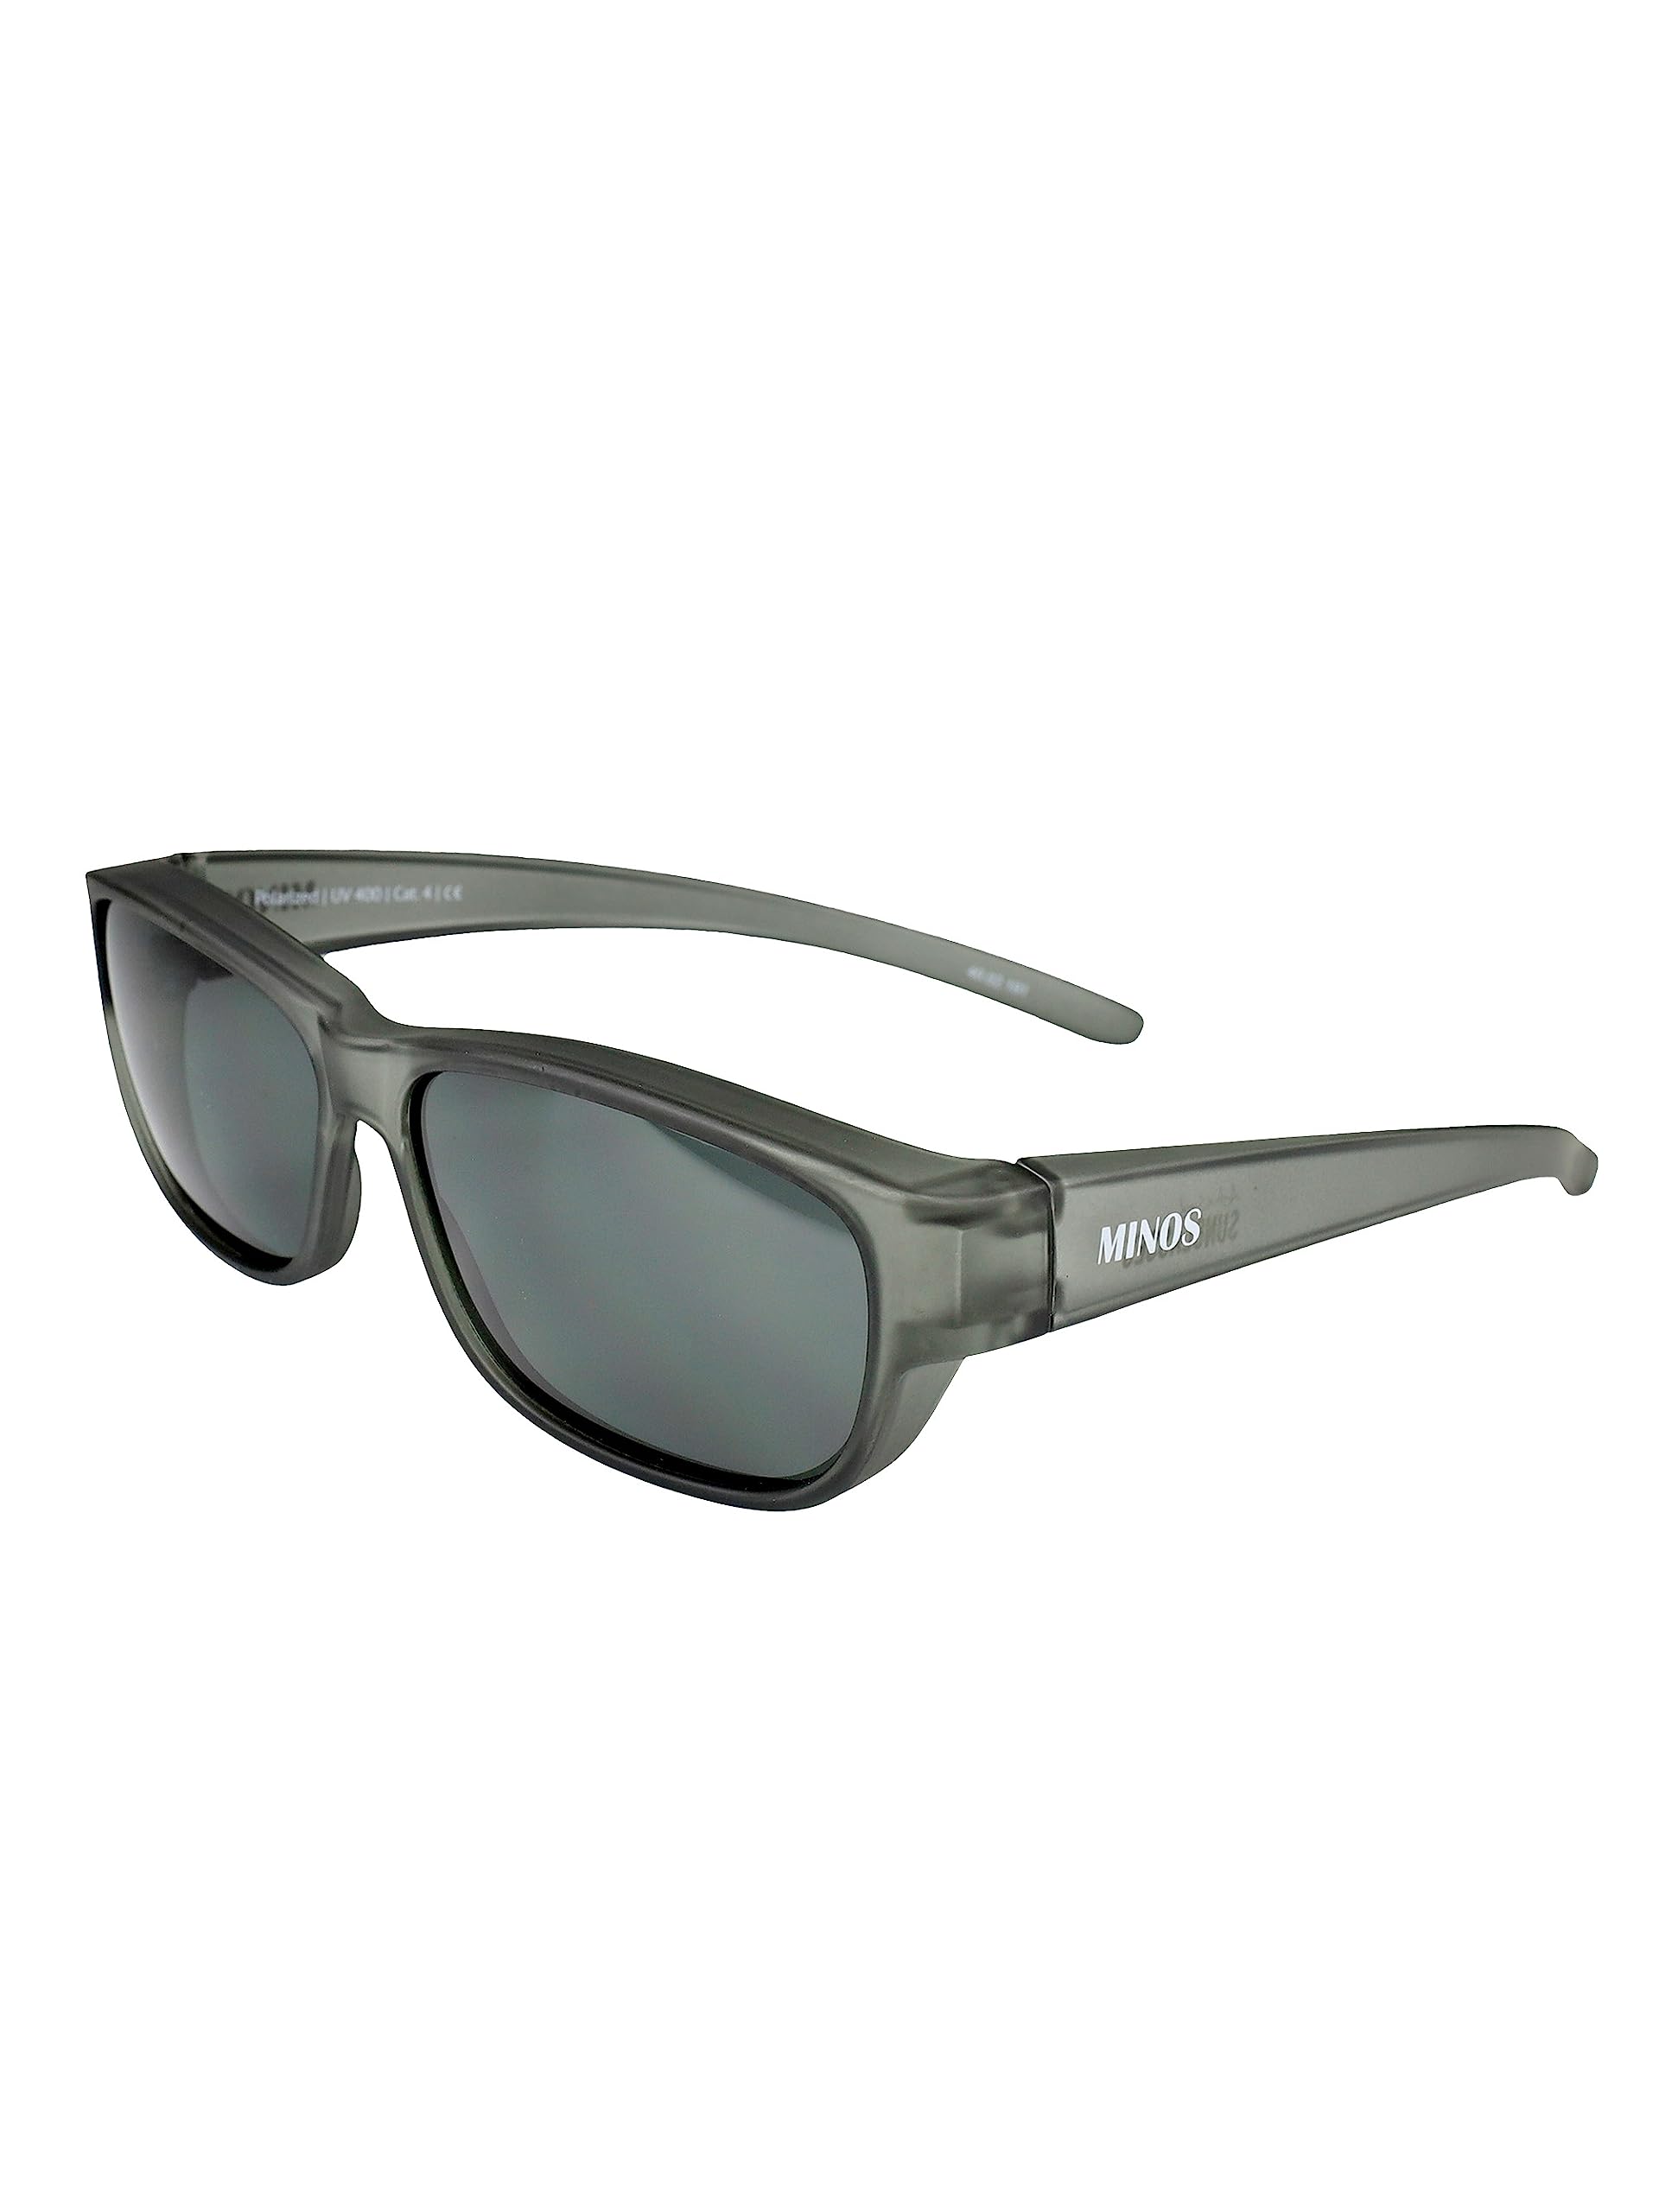 ActiveSol | Überzieh-Sonnenbrille MINOS für kleine Brillen | Herren | polarisiert, Lotus-Effekt